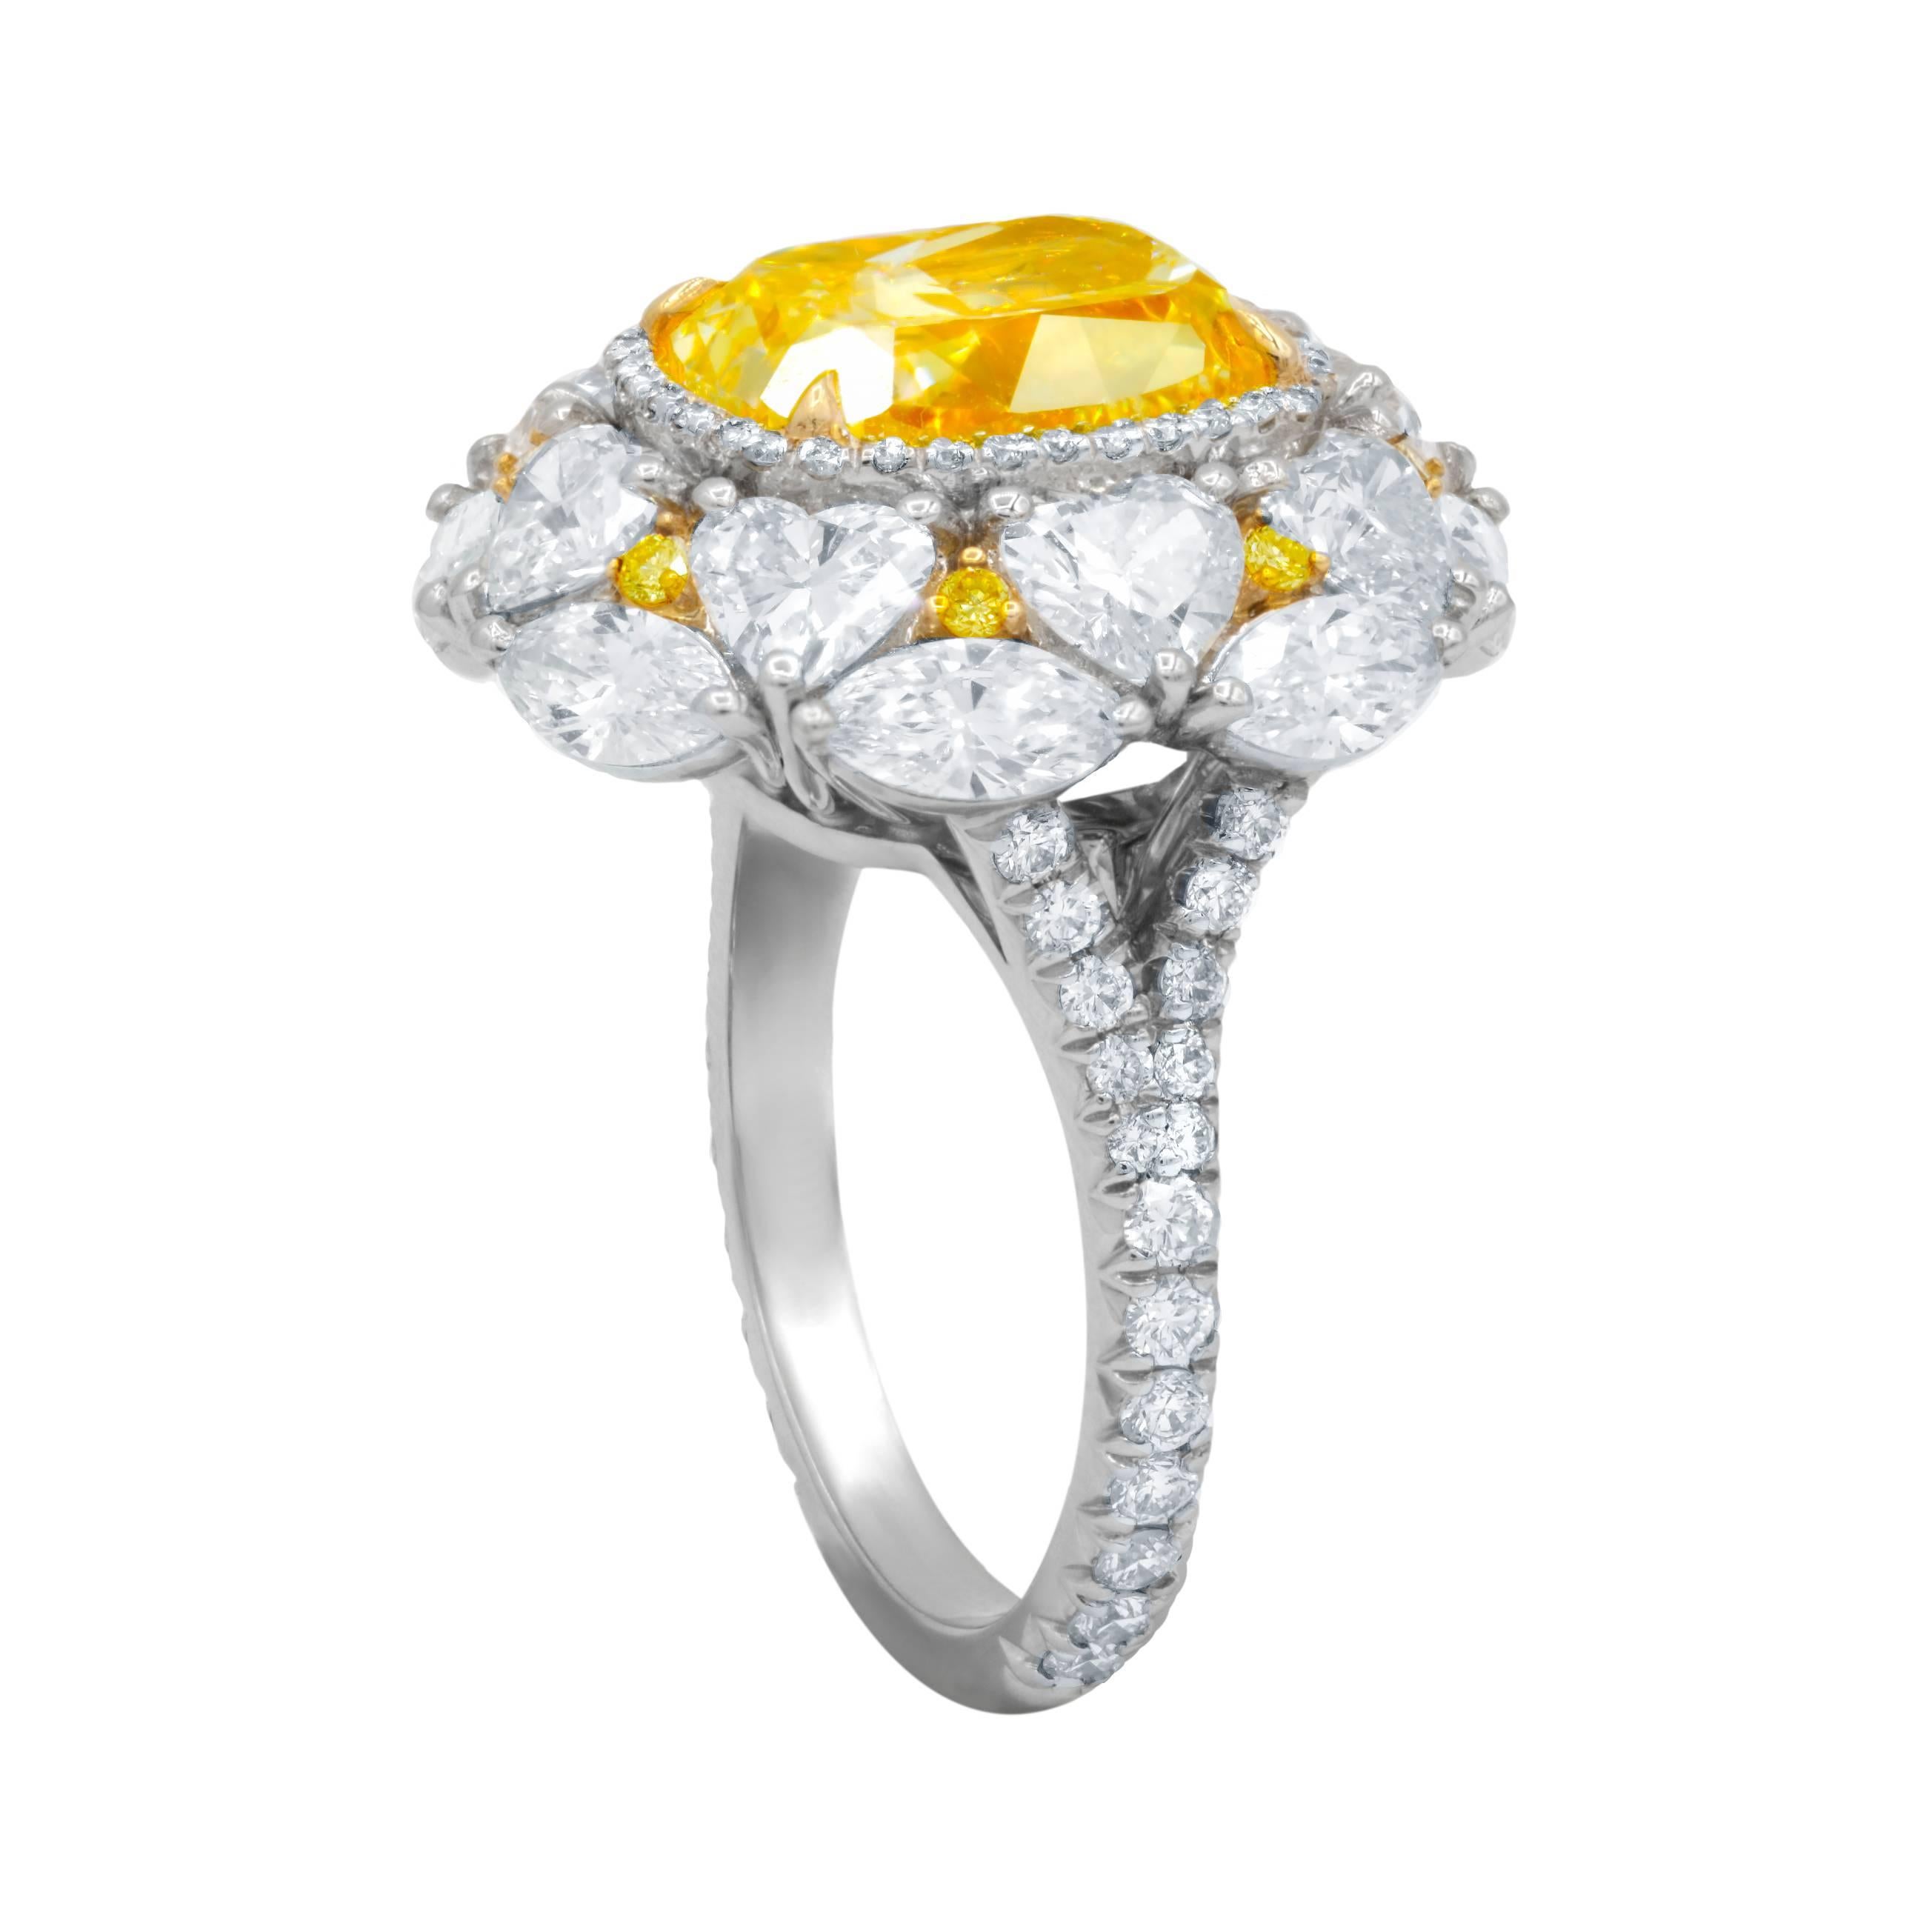 Exklusiv gestalteter Fancy Yellow (Canary) Diamantring.
Der zentrale Diamant ist 5,01 Karat Fancy Light Yellow, VS2 in Clarity, zertifiziert vom GIA Labor, umgeben von 5,00 Karat Diamanten an der Seite. 8 herzförmige Diamanten von je ca. 0,25 Karat